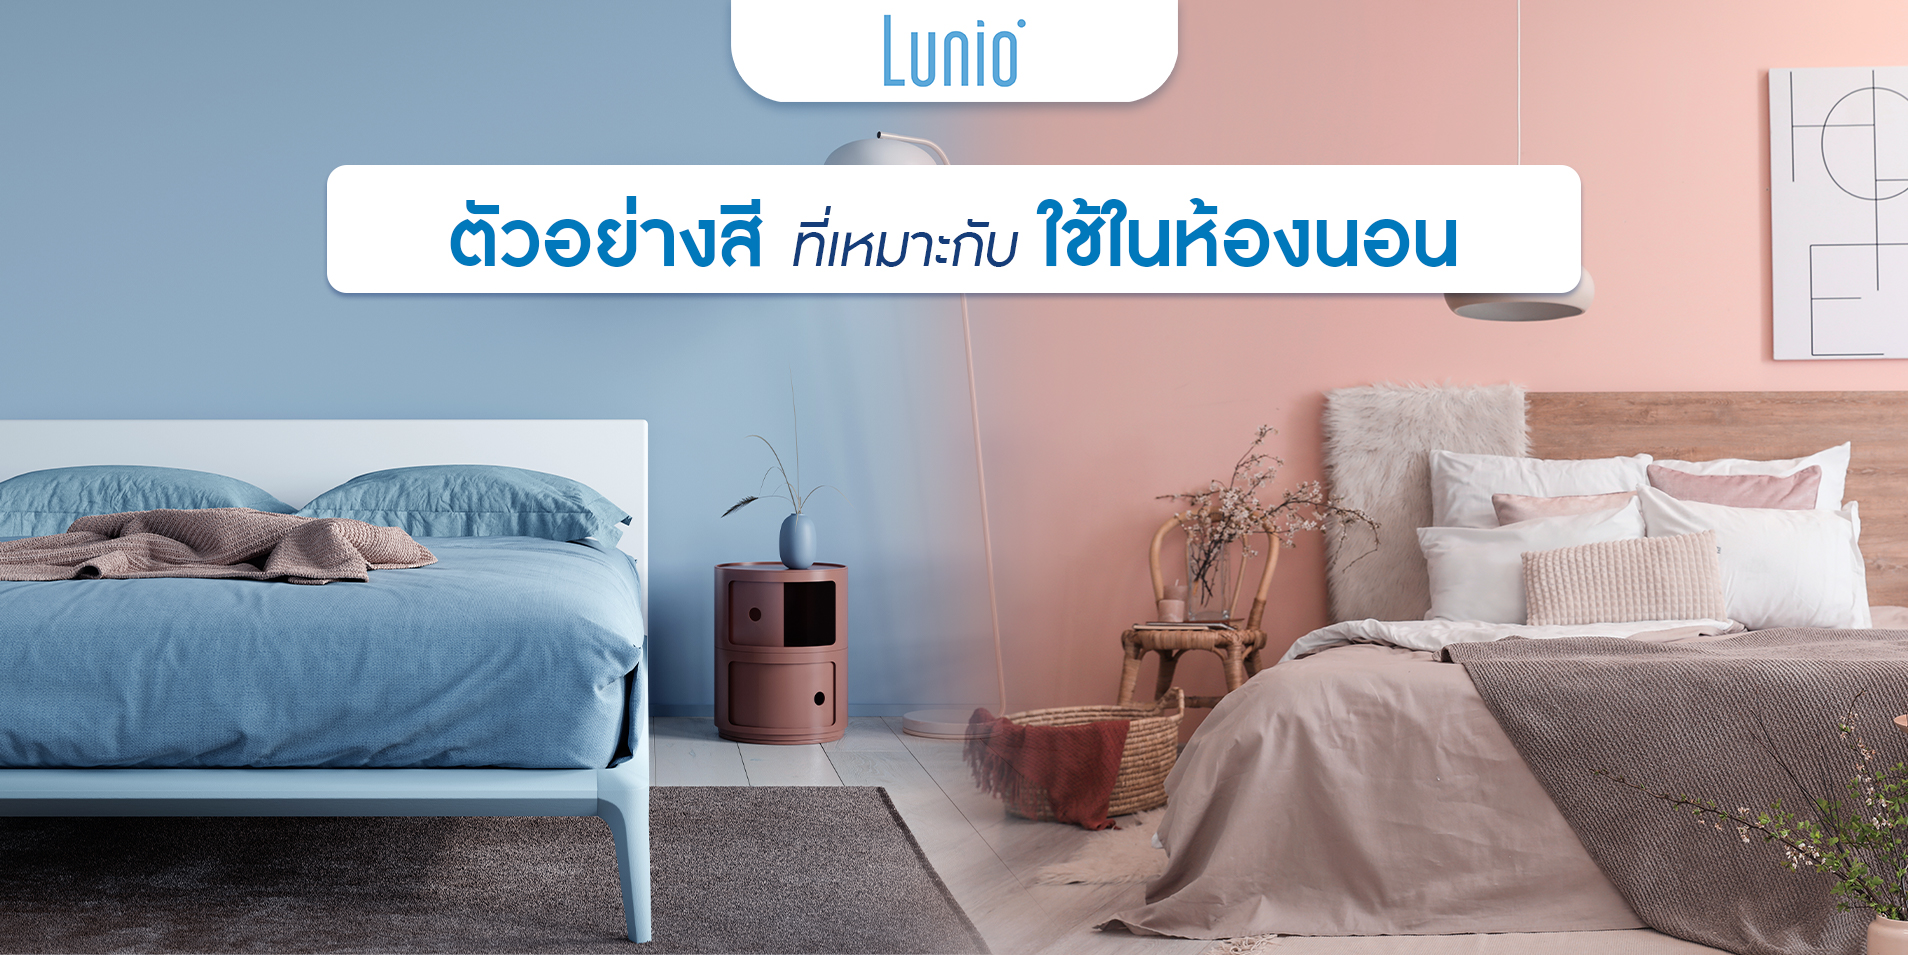 รู้หรือไม่ สีห้องของห้องนอน ส่งเสริมได้ทั้งฮวงจุ้ยและสุขภาพการนอนหลับ! |  Lunio ฟูกที่นอนยางพารา